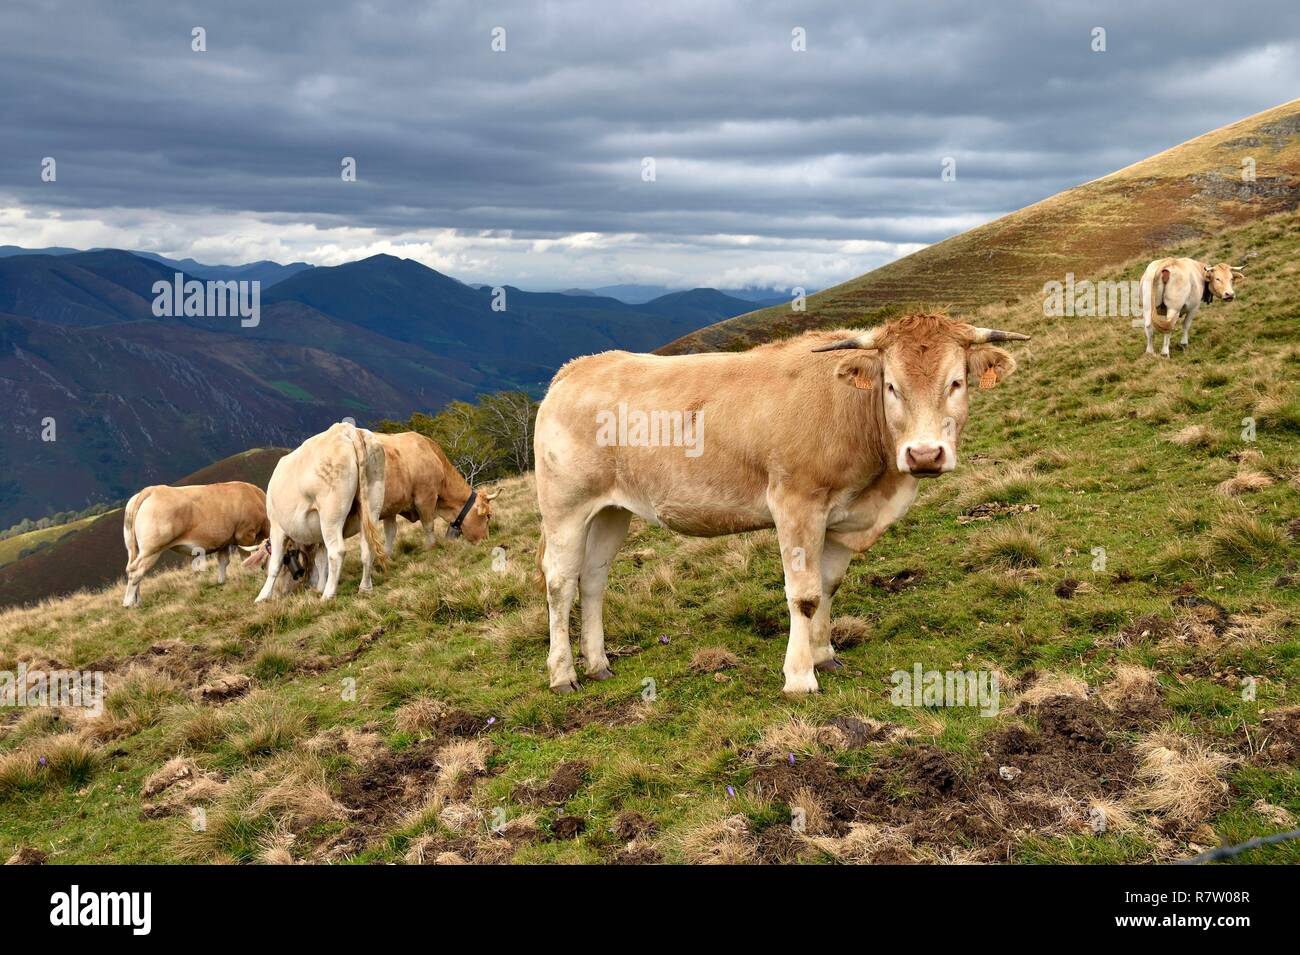 Spain, Basque Country, Navarra, Camino de Santiago (the Way of St. James) between Saint Jean Pied de Port and Roncesvalles, herd of cows Stock Photo